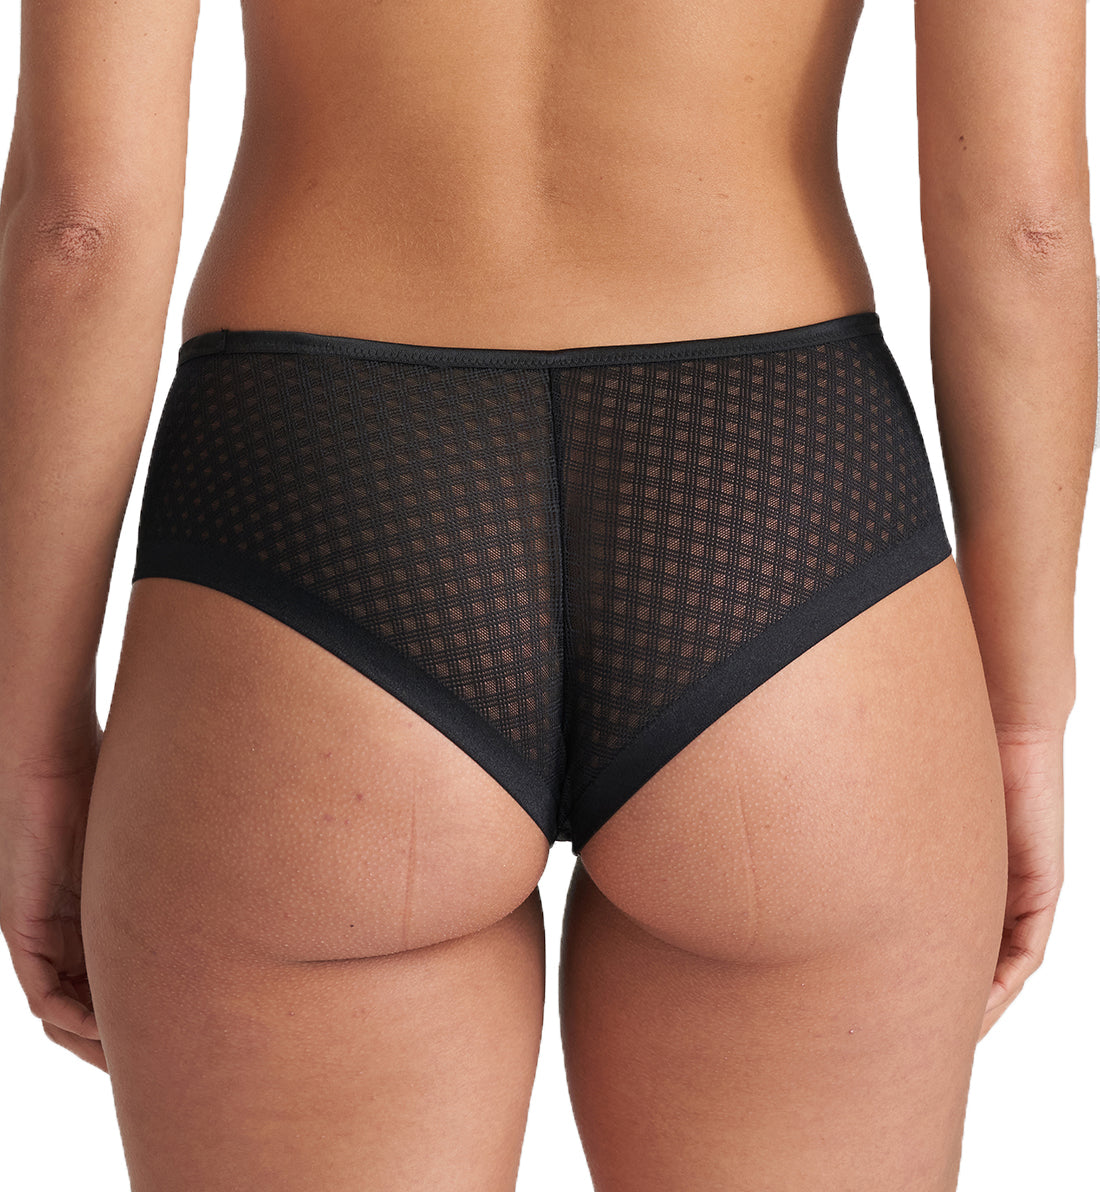 Marie Jo Channing Matching Hotpants Panty (0522242),XS,Black - Black,XS